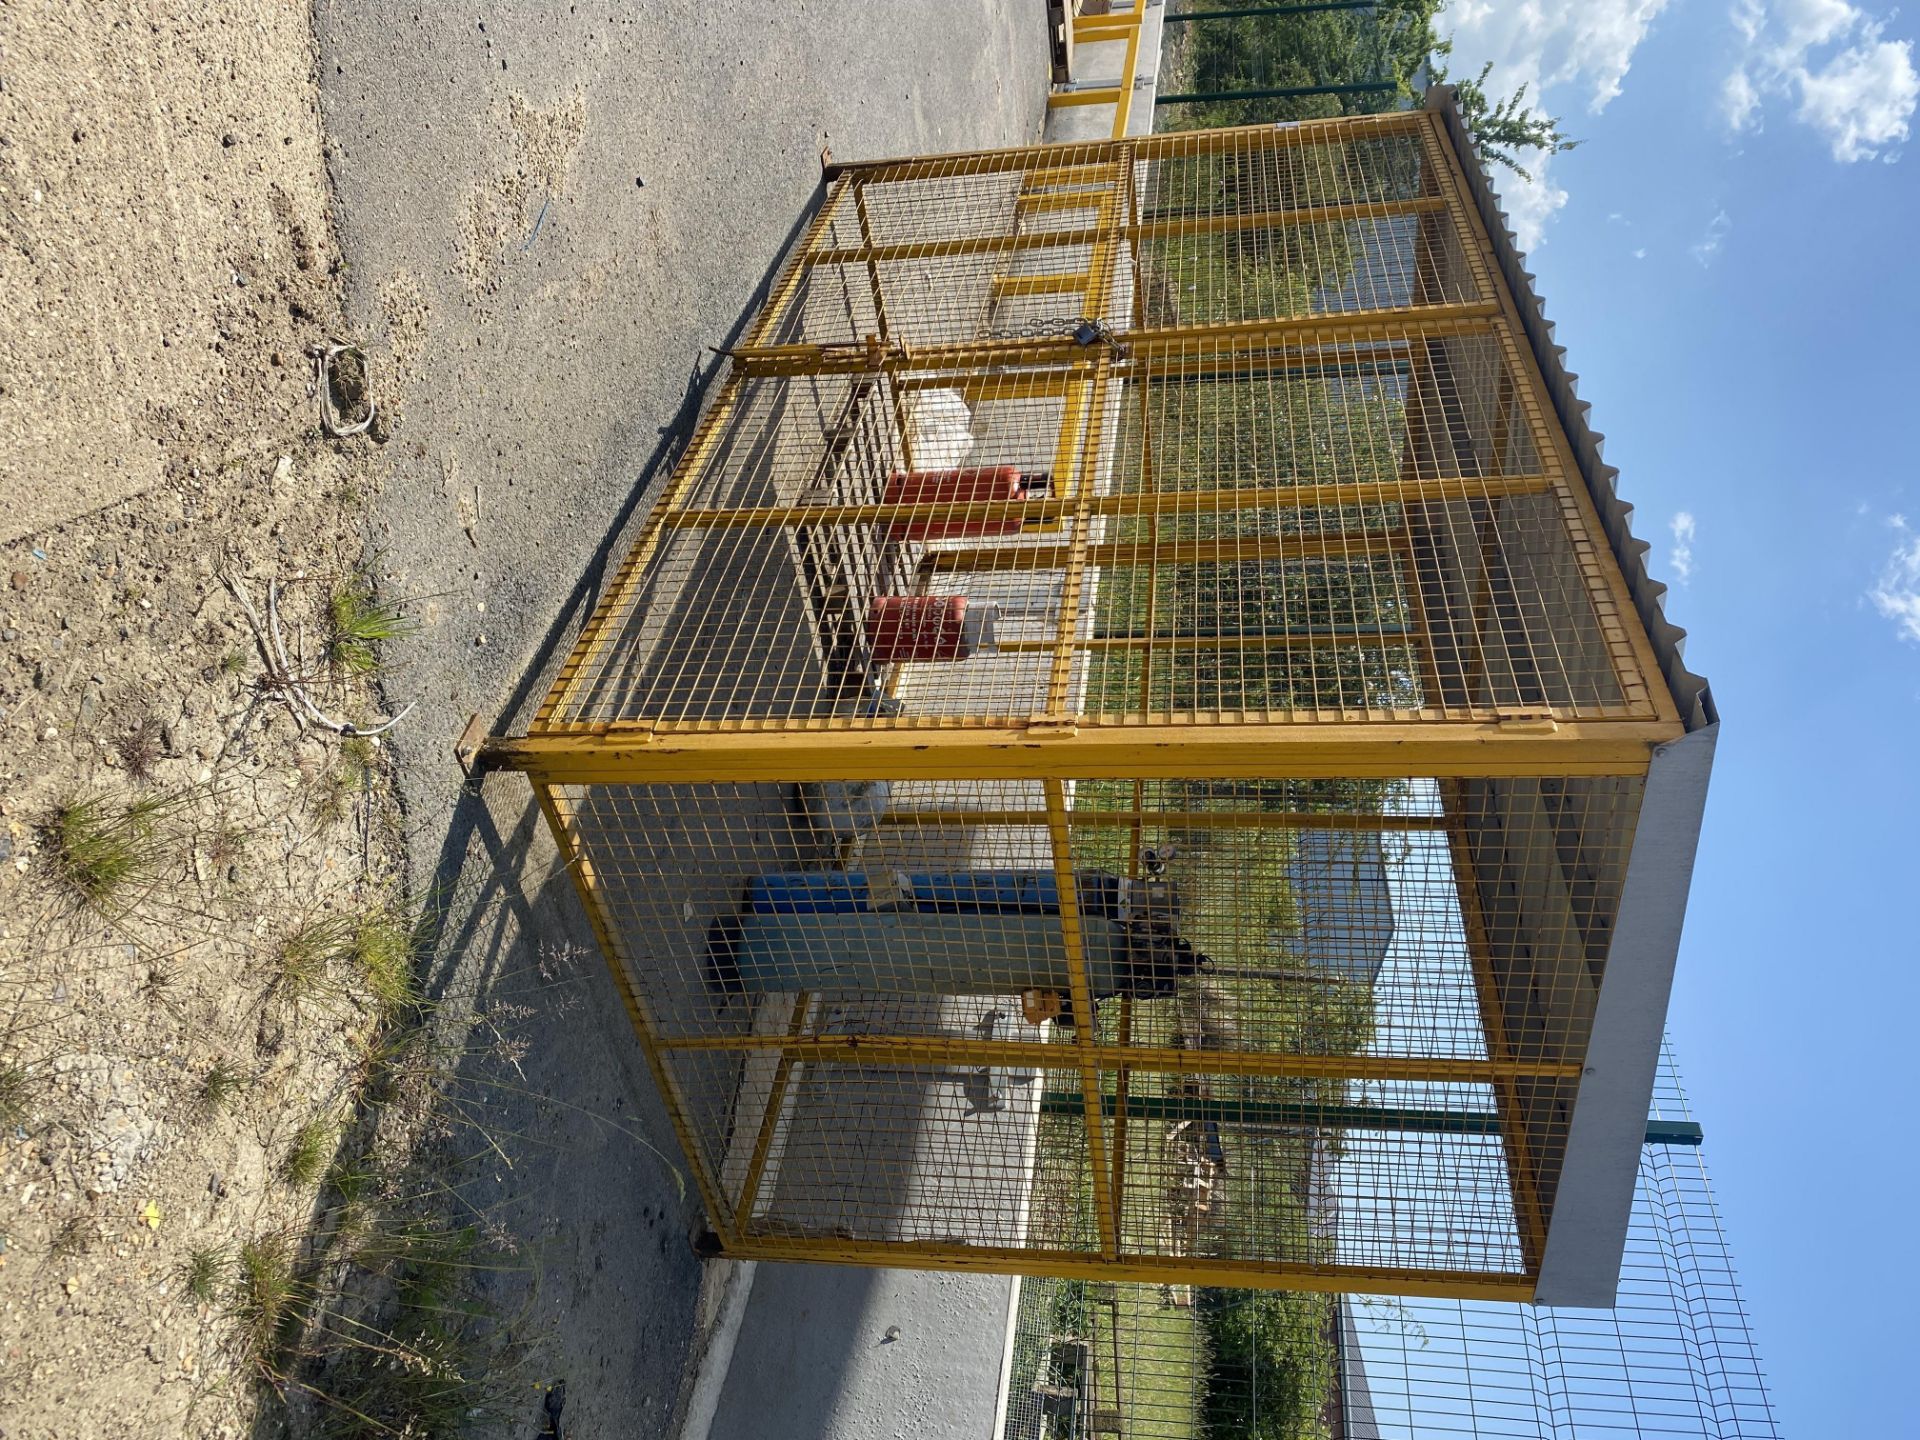 Large storage cage unit - Image 2 of 2